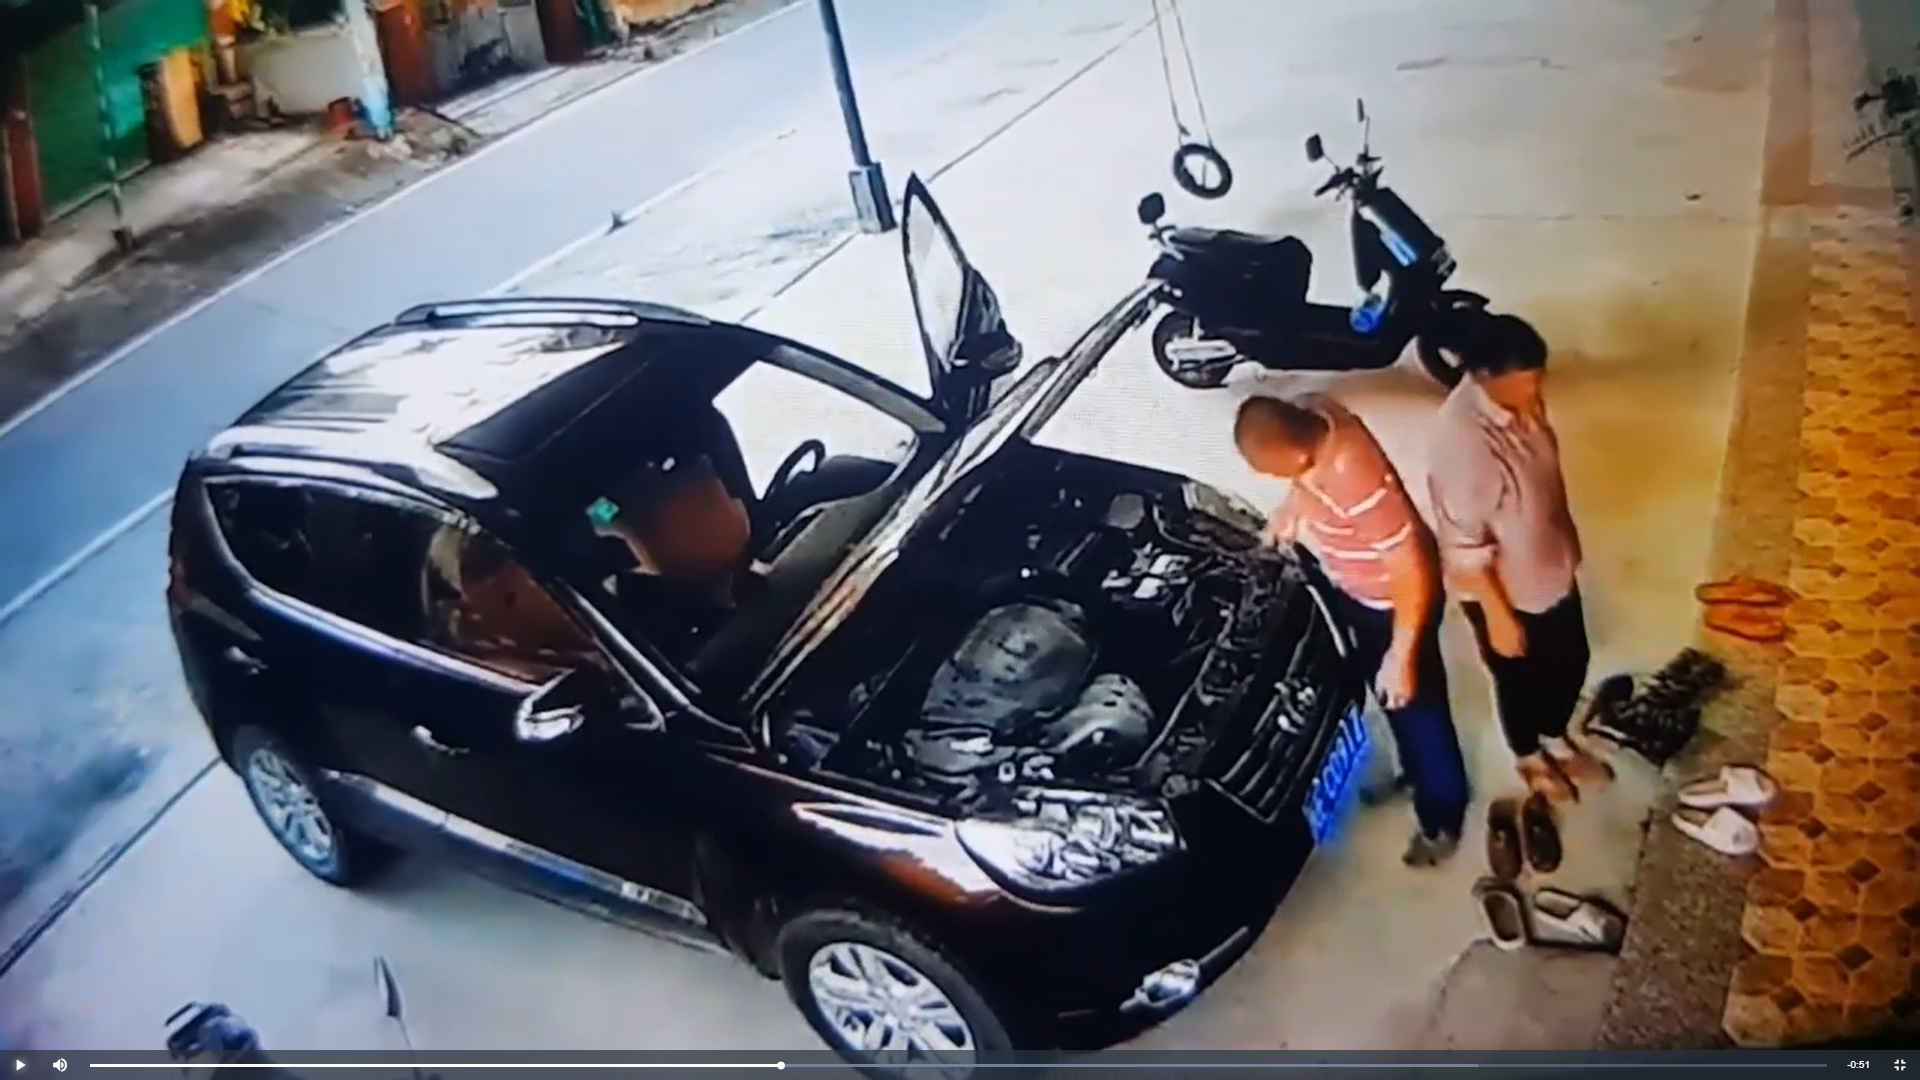 Hi hữu: Tắt máy xuống kiểm tra xe, người đàn ông bất ngờ bị chính chiếc ô tô của mình “hạ gục” - ảnh 4